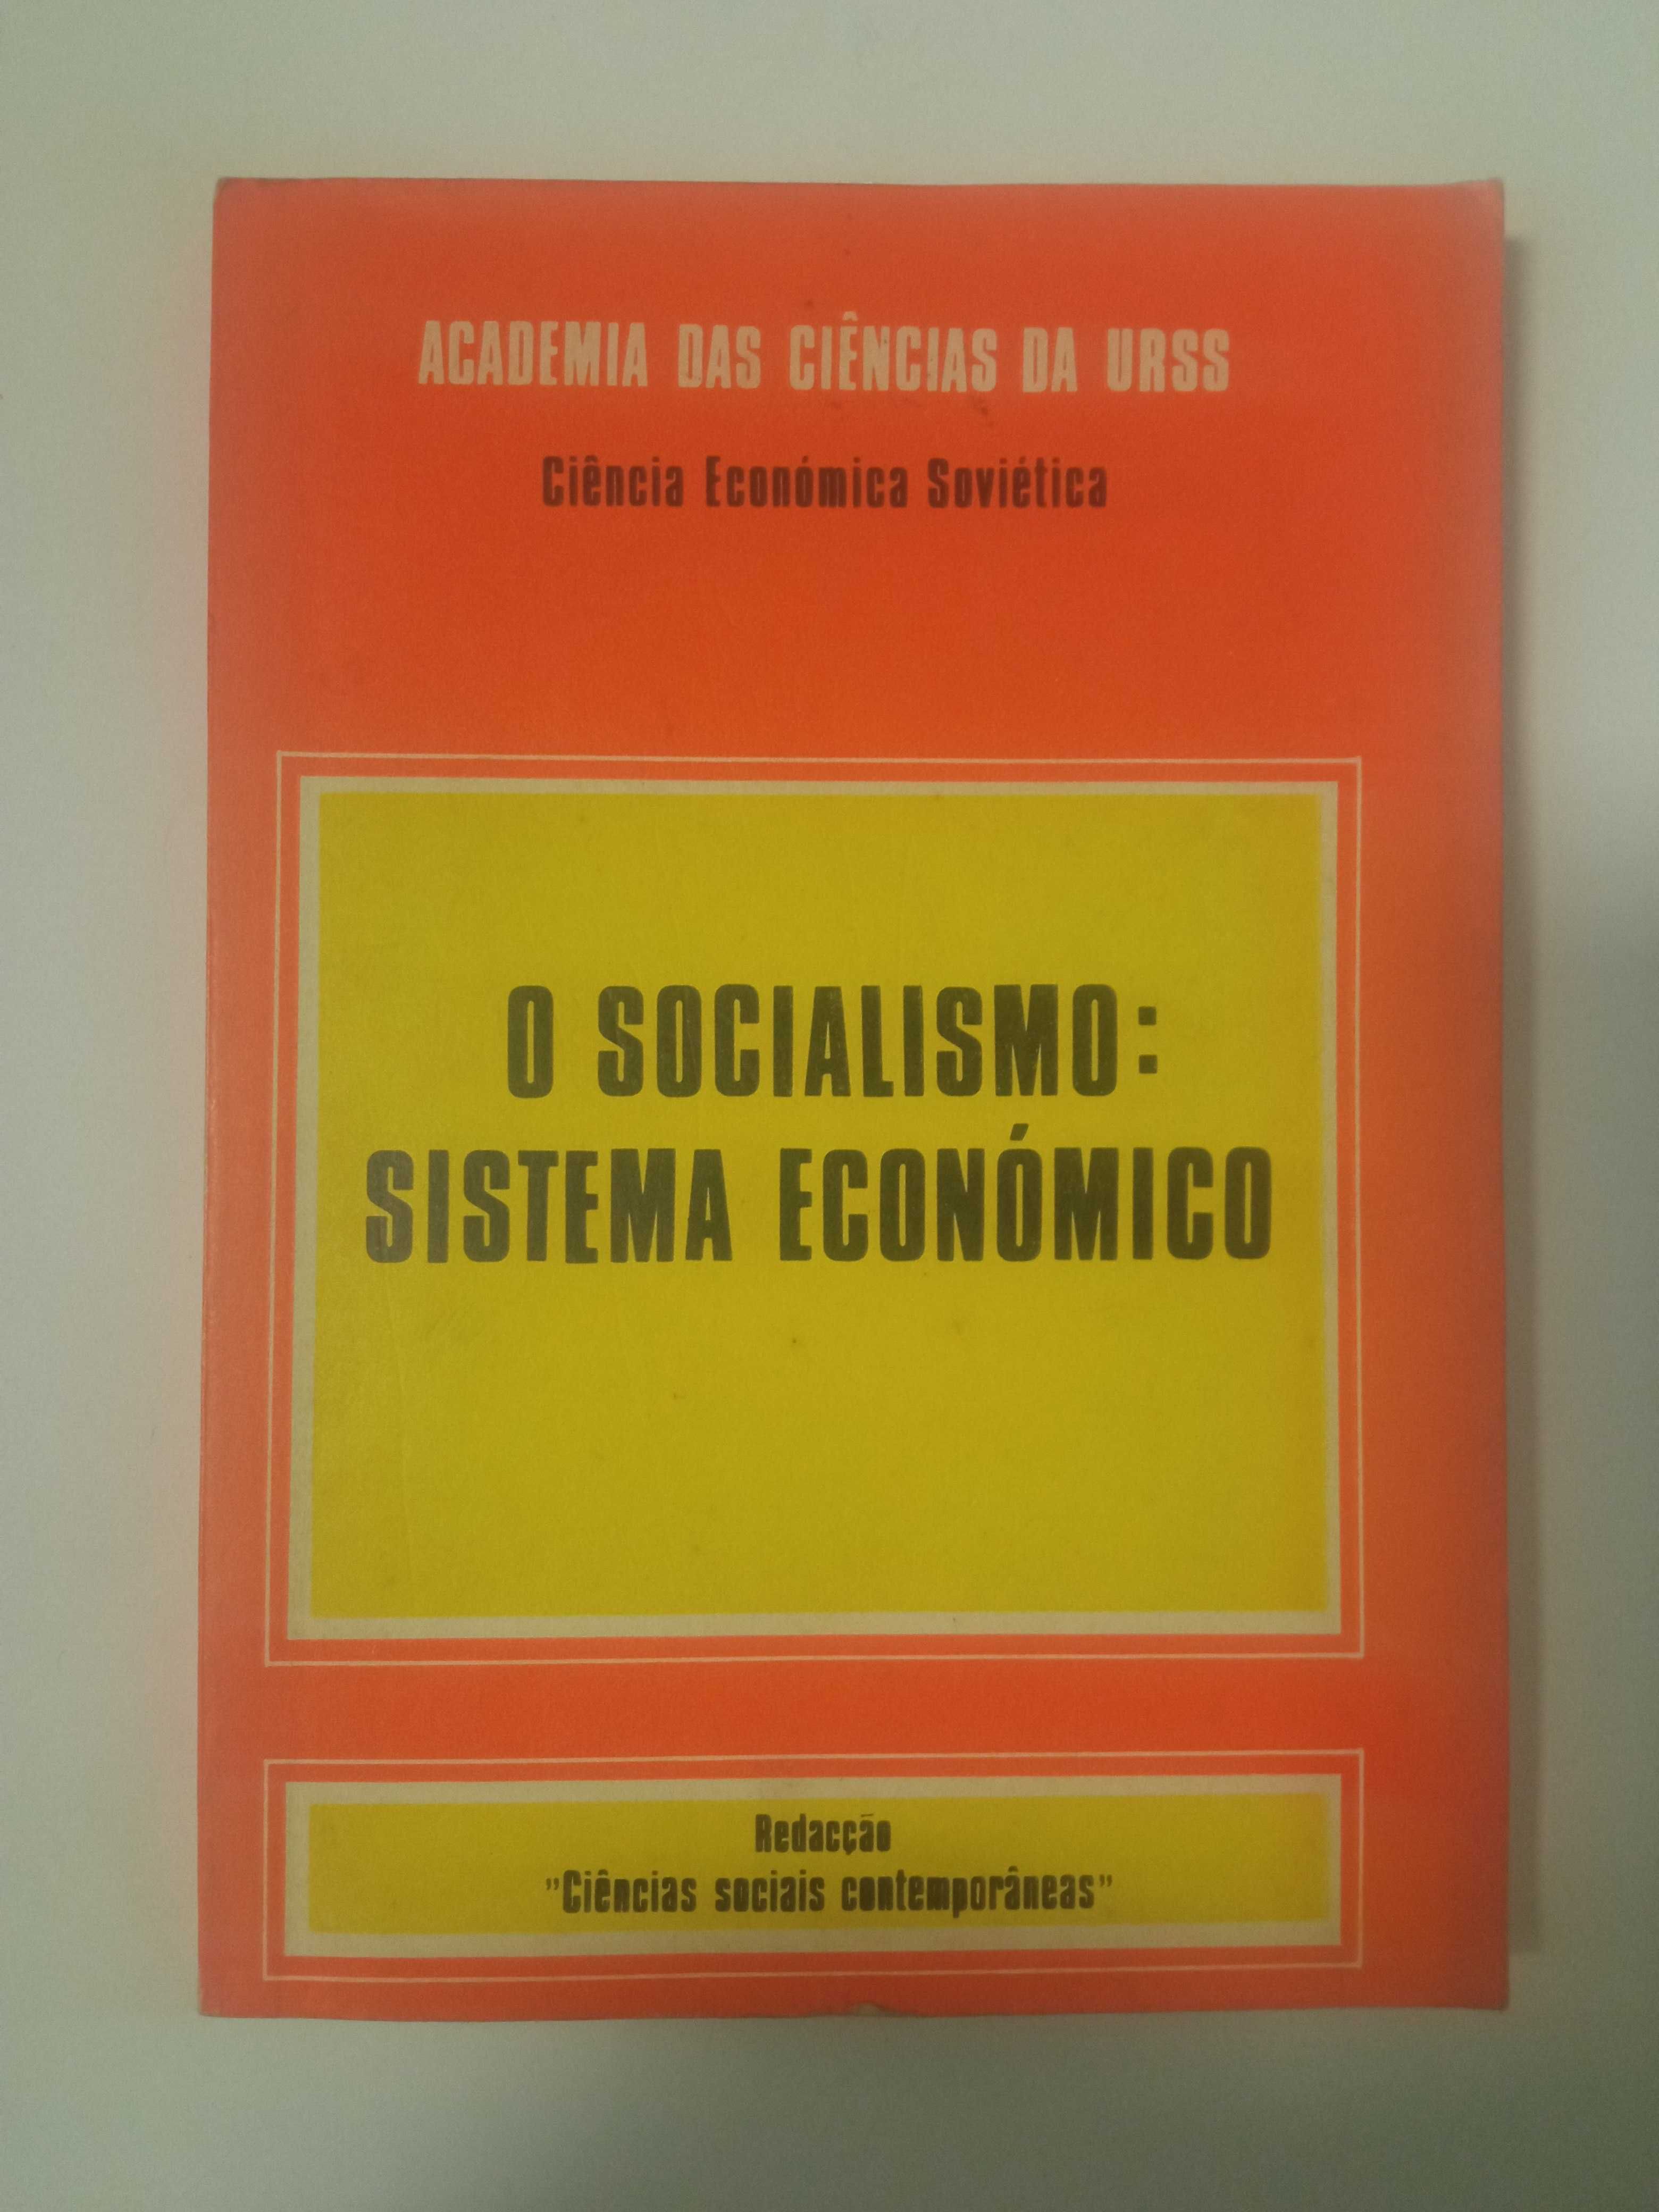 O Socialismo: Sistema Económico, Academia das Ciências da URSS